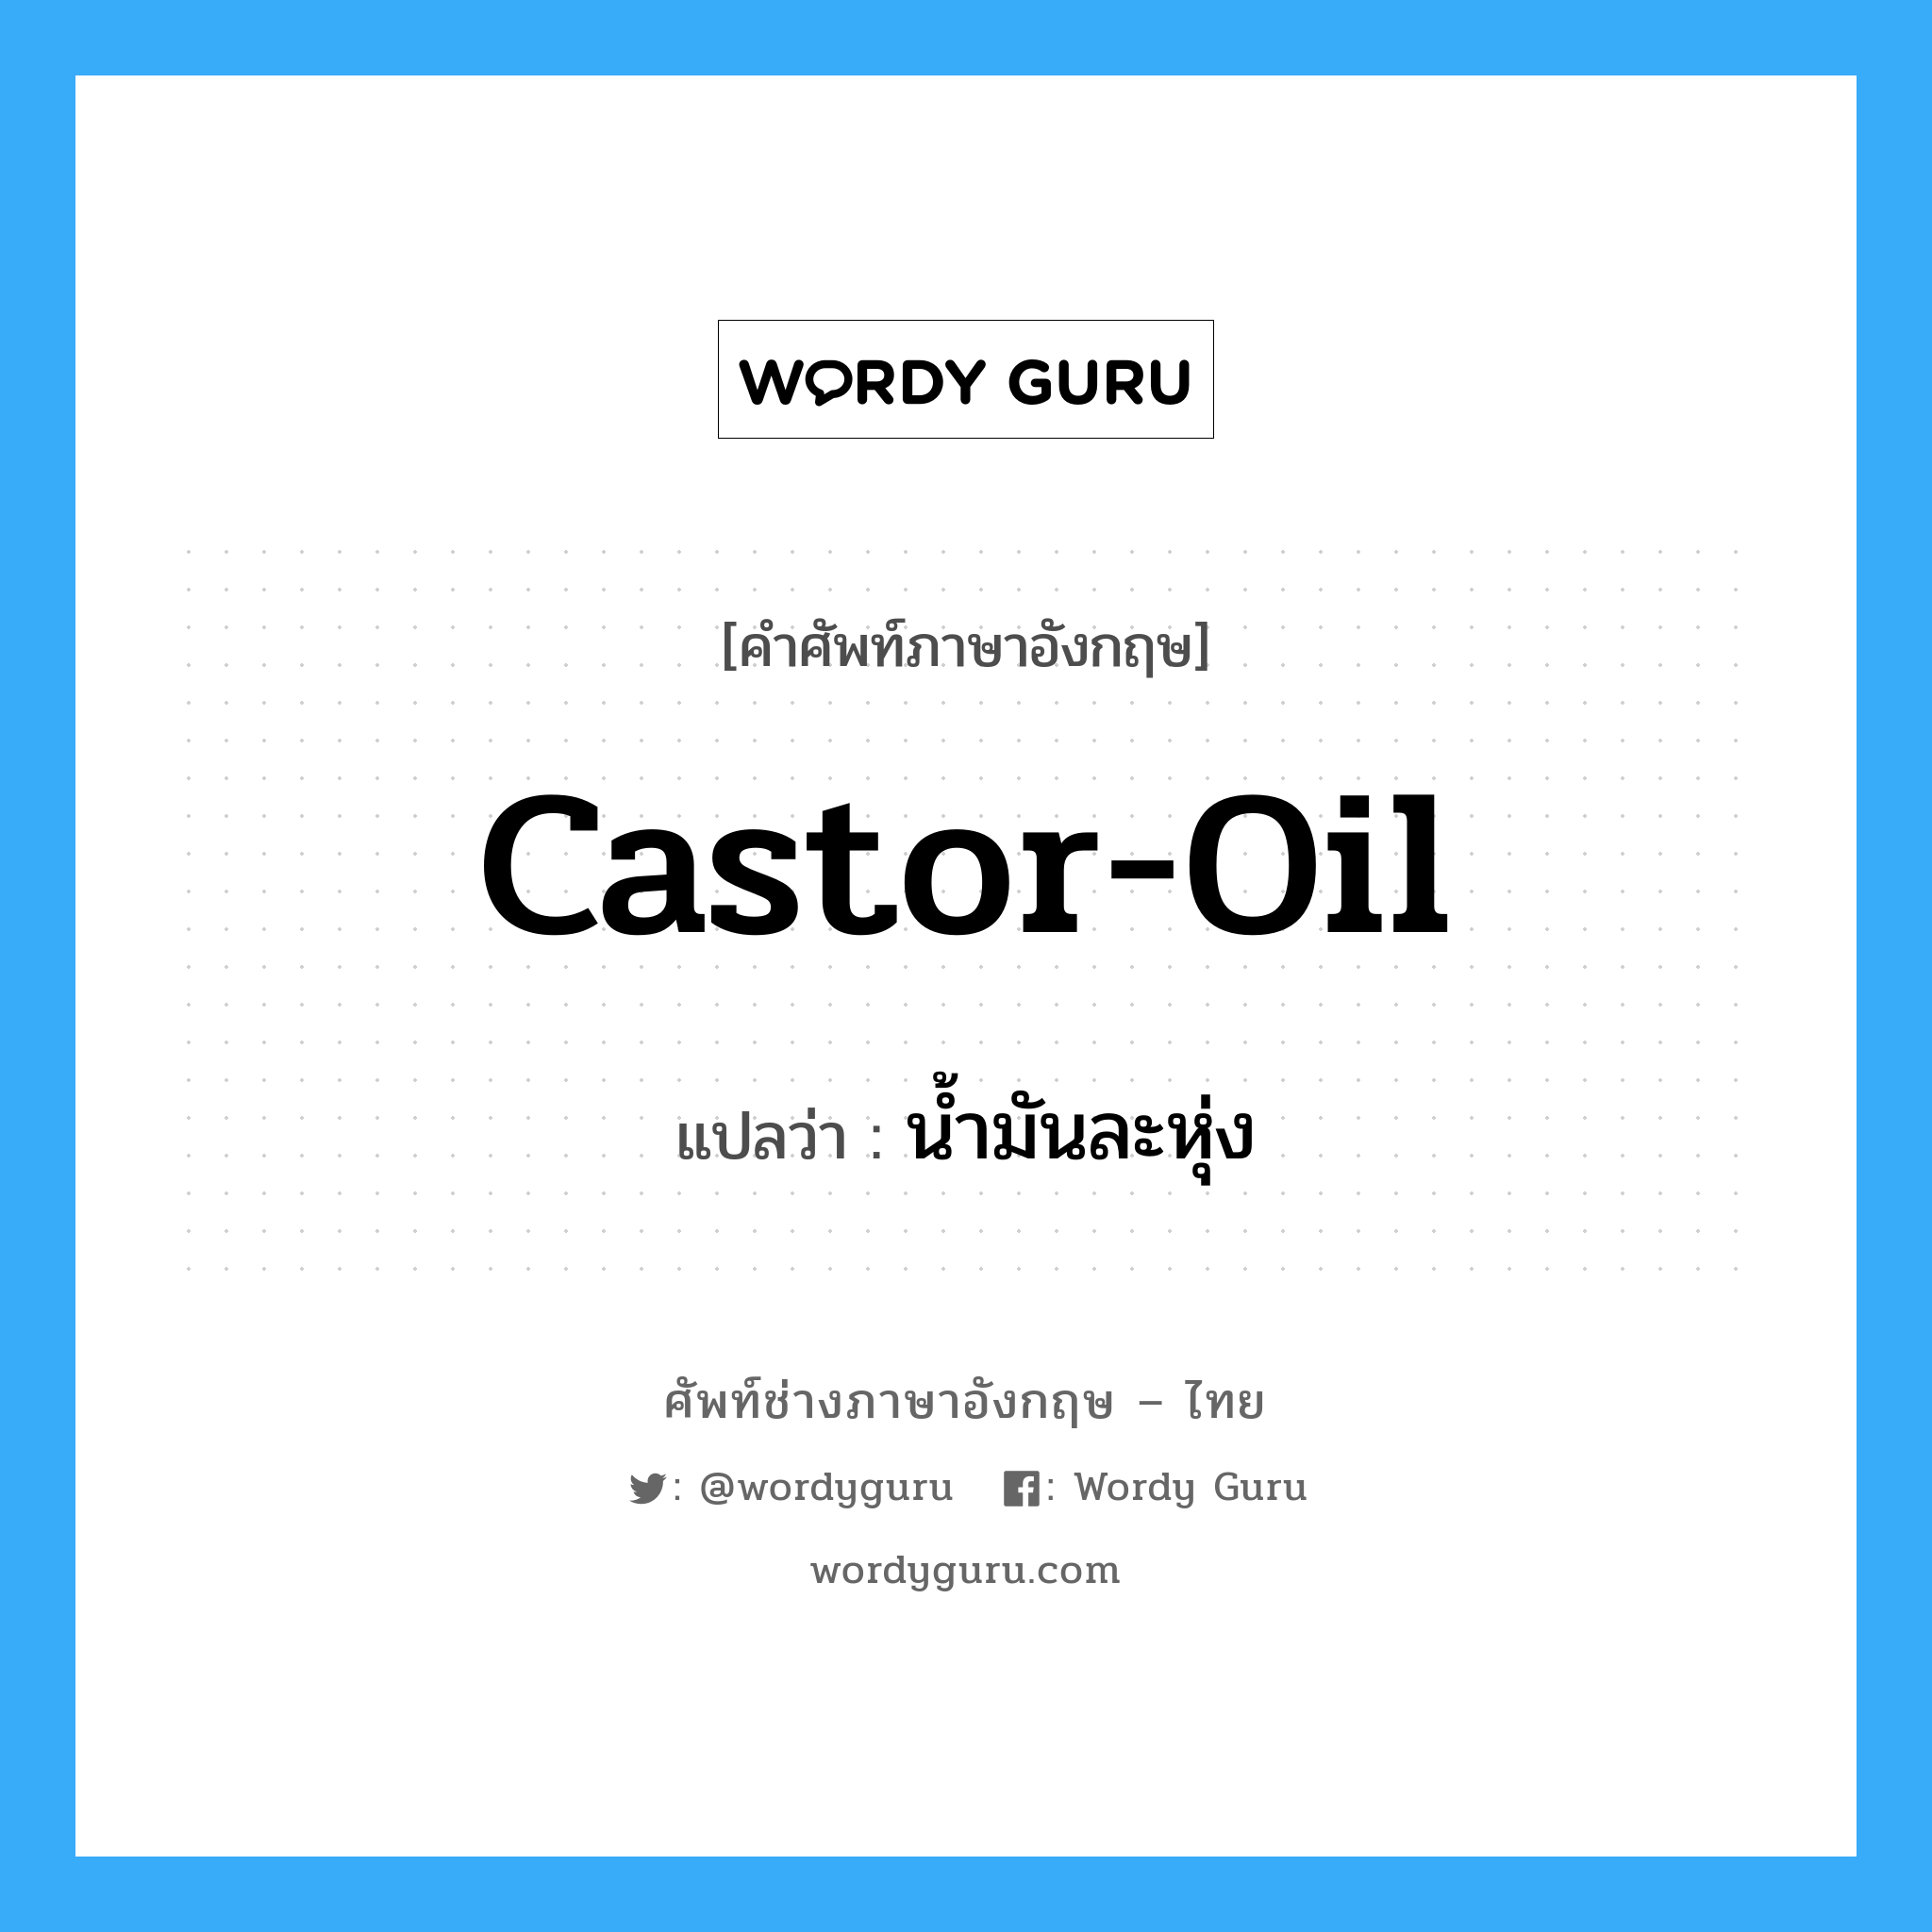 castor-oil แปลว่า?, คำศัพท์ช่างภาษาอังกฤษ - ไทย castor-oil คำศัพท์ภาษาอังกฤษ castor-oil แปลว่า น้ำมันละหุ่ง